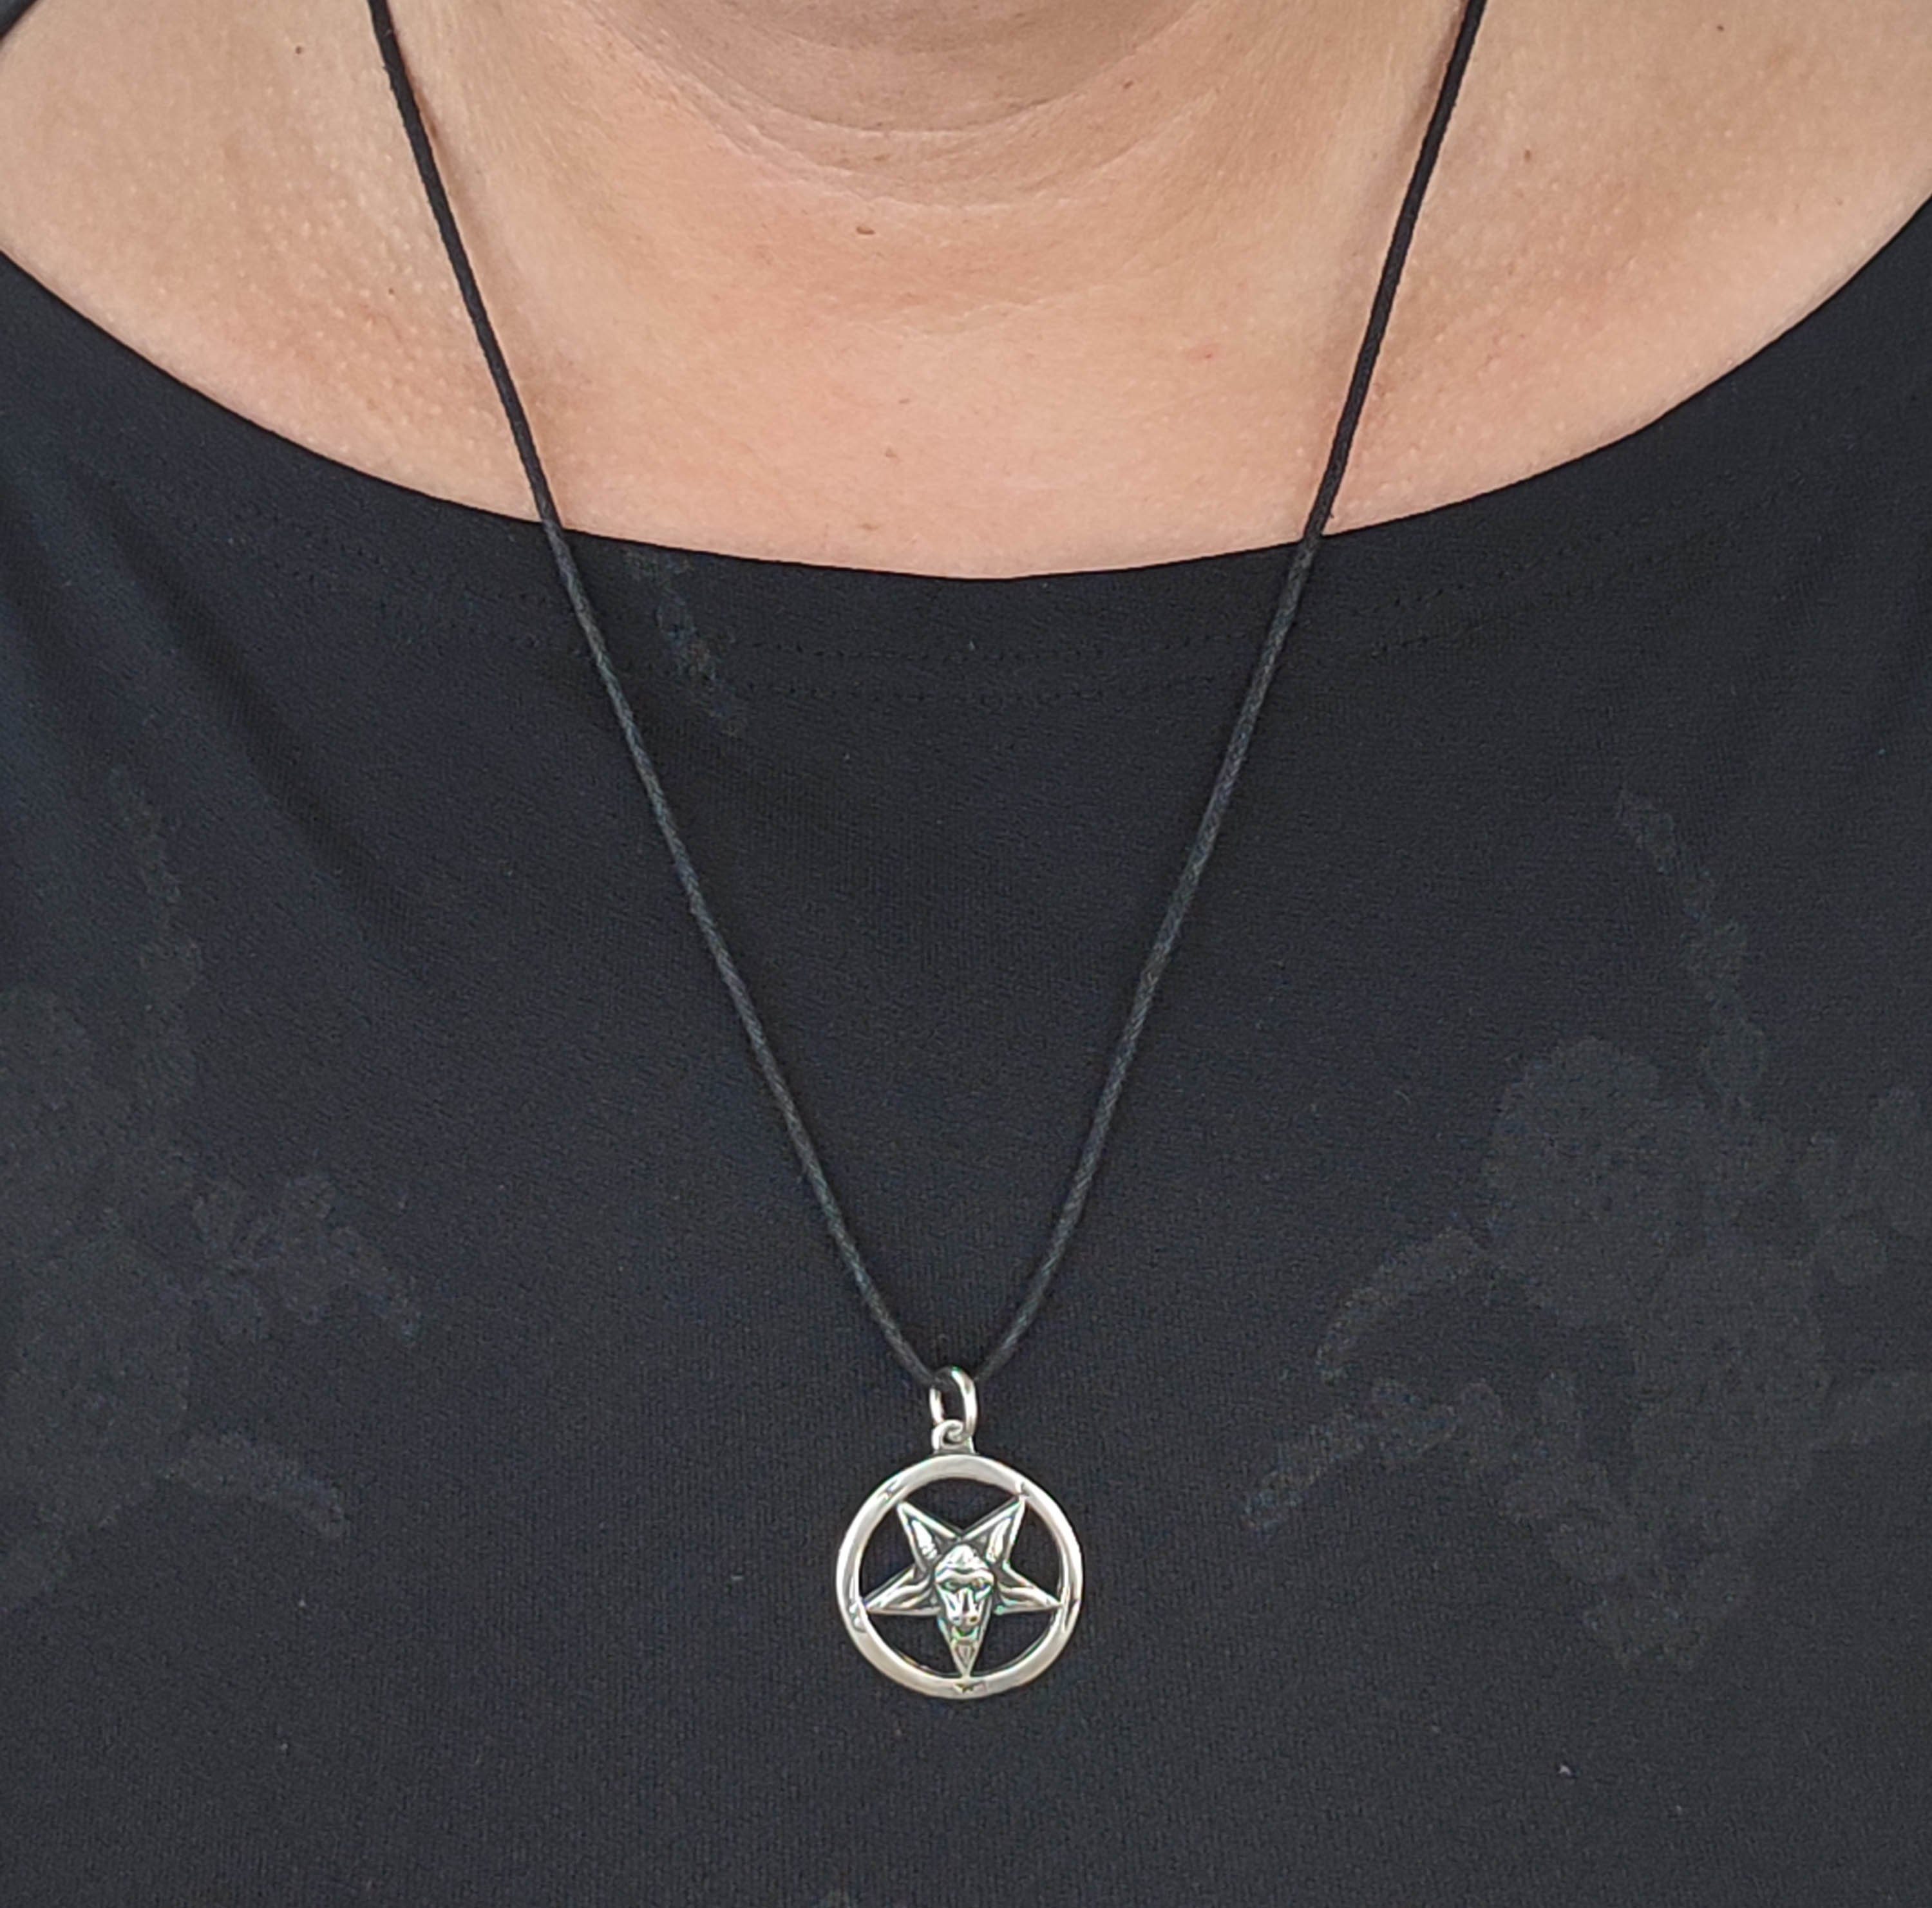 of Pentagramm Kiss Baphomet 925 Ziegenkopf Silber Kettenanhänger Satanist Anhänger Leather